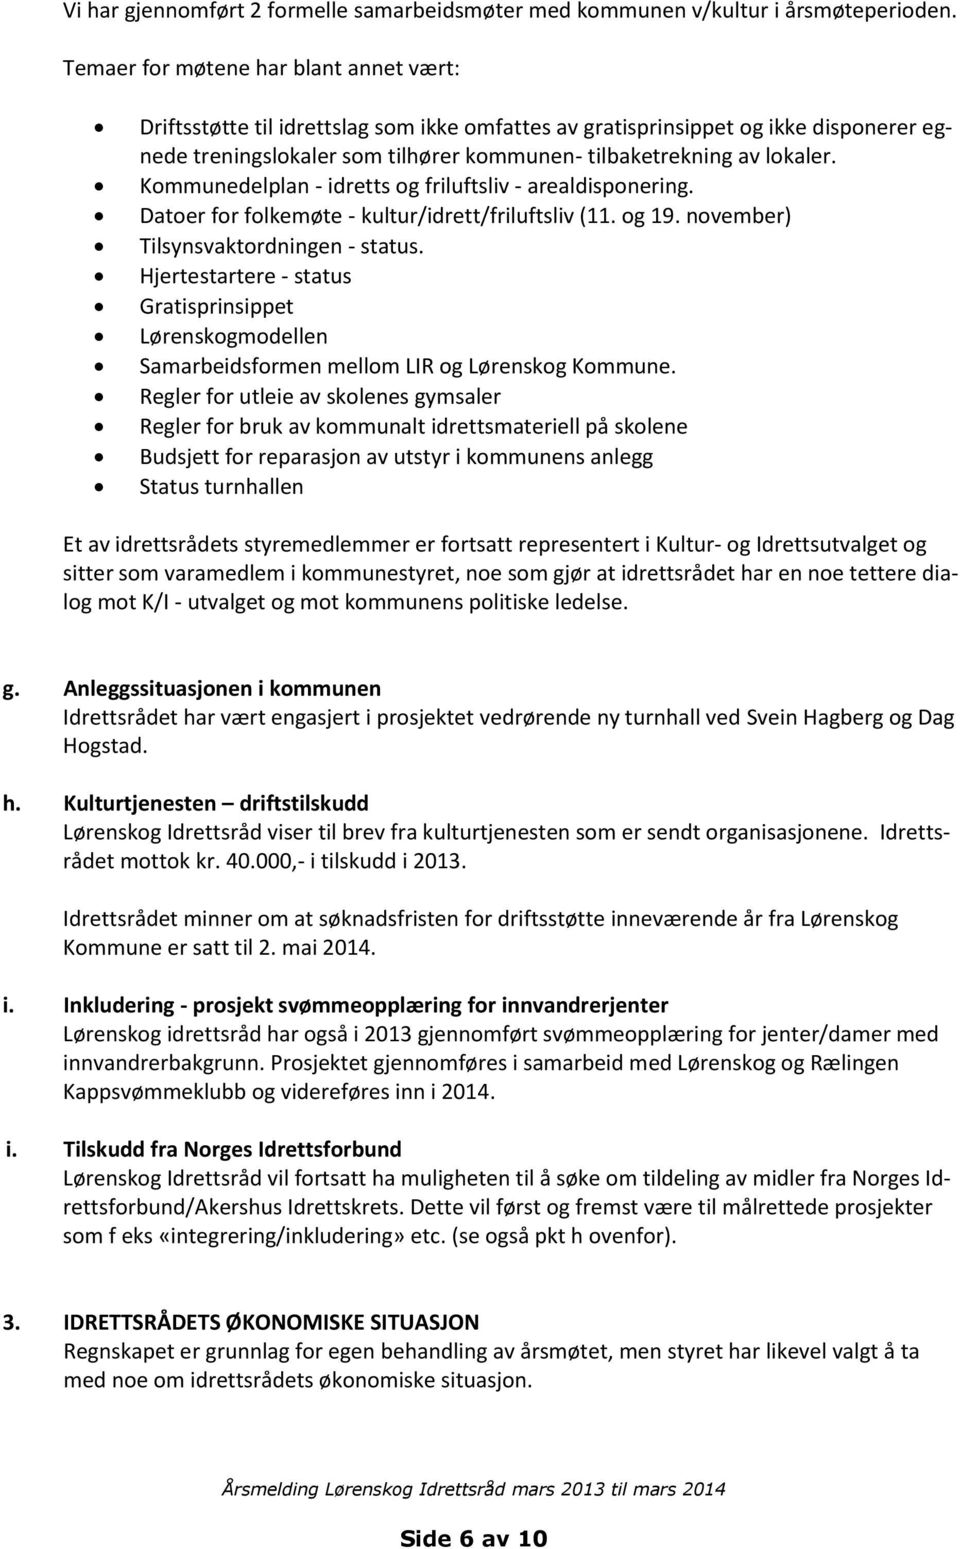 Kommunedelplan - idretts og friluftsliv - arealdisponering. Datoer for folkemøte - kultur/idrett/friluftsliv (11. og 19. november) Tilsynsvaktordningen - status.